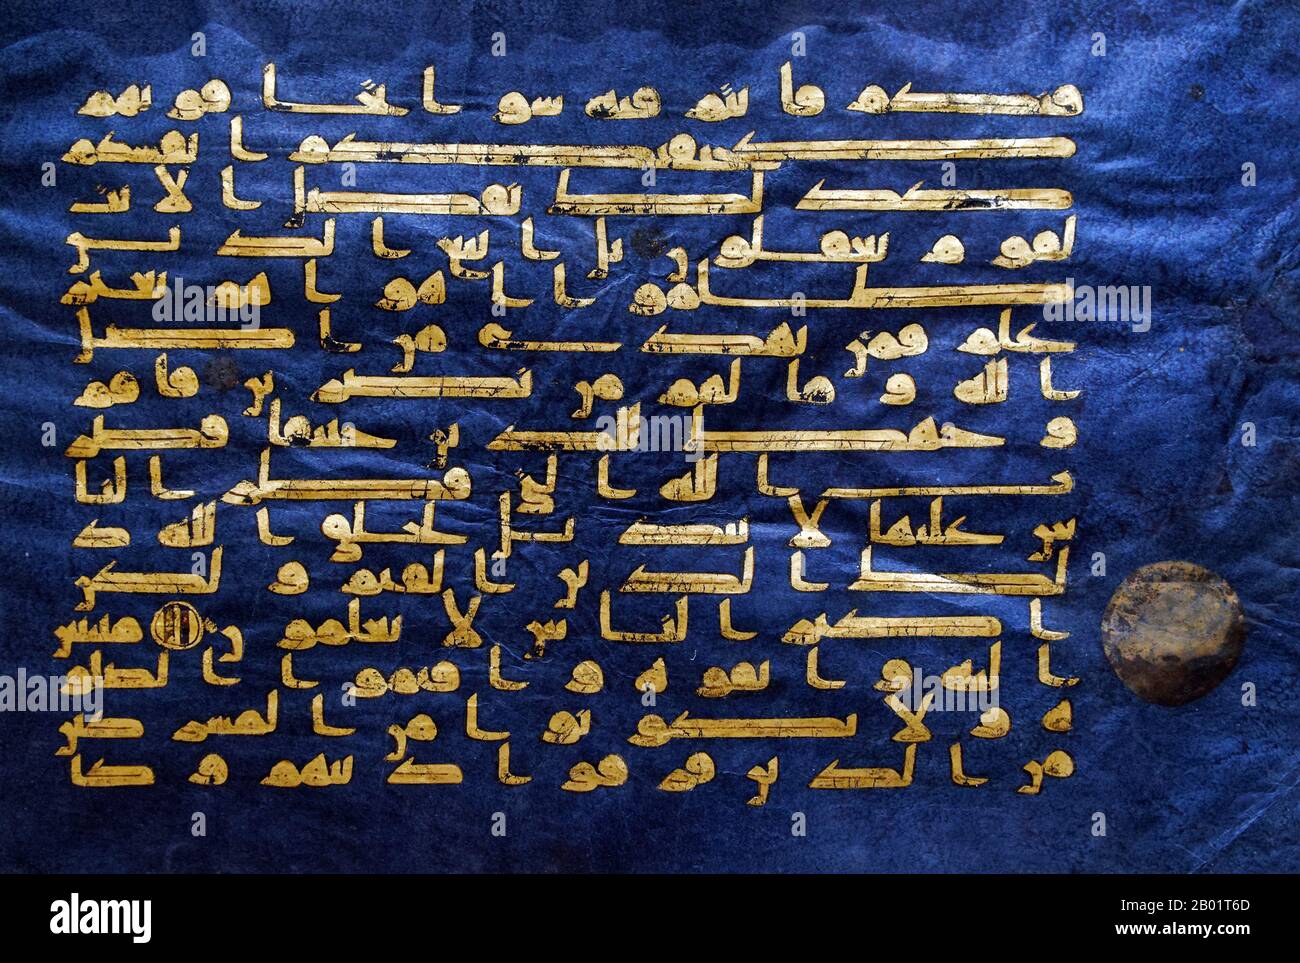 Tunisia: Surat al-Rum ('Sura dei Romani'), in scrittura cufica. Dal "Blue Coran", Qairawan, Tunisia, 1000 d.C. Il Corano Azzurro è un manoscritto del Corano tunisino della fine del IX - inizio X secolo in calligrafia cufica. È scritto in oro (crisografia) su pergamena morta con indaco, un aspetto unico. È tra le più famose opere d'arte islamica ed è stato definito "uno dei più straordinari manoscritti di lusso mai creati". Il manoscritto fu disperso durante il periodo ottomano; oggi la maggior parte si trova presso l'Istituto Nazionale di Arte e Archeologia di Tunisi. Foto Stock